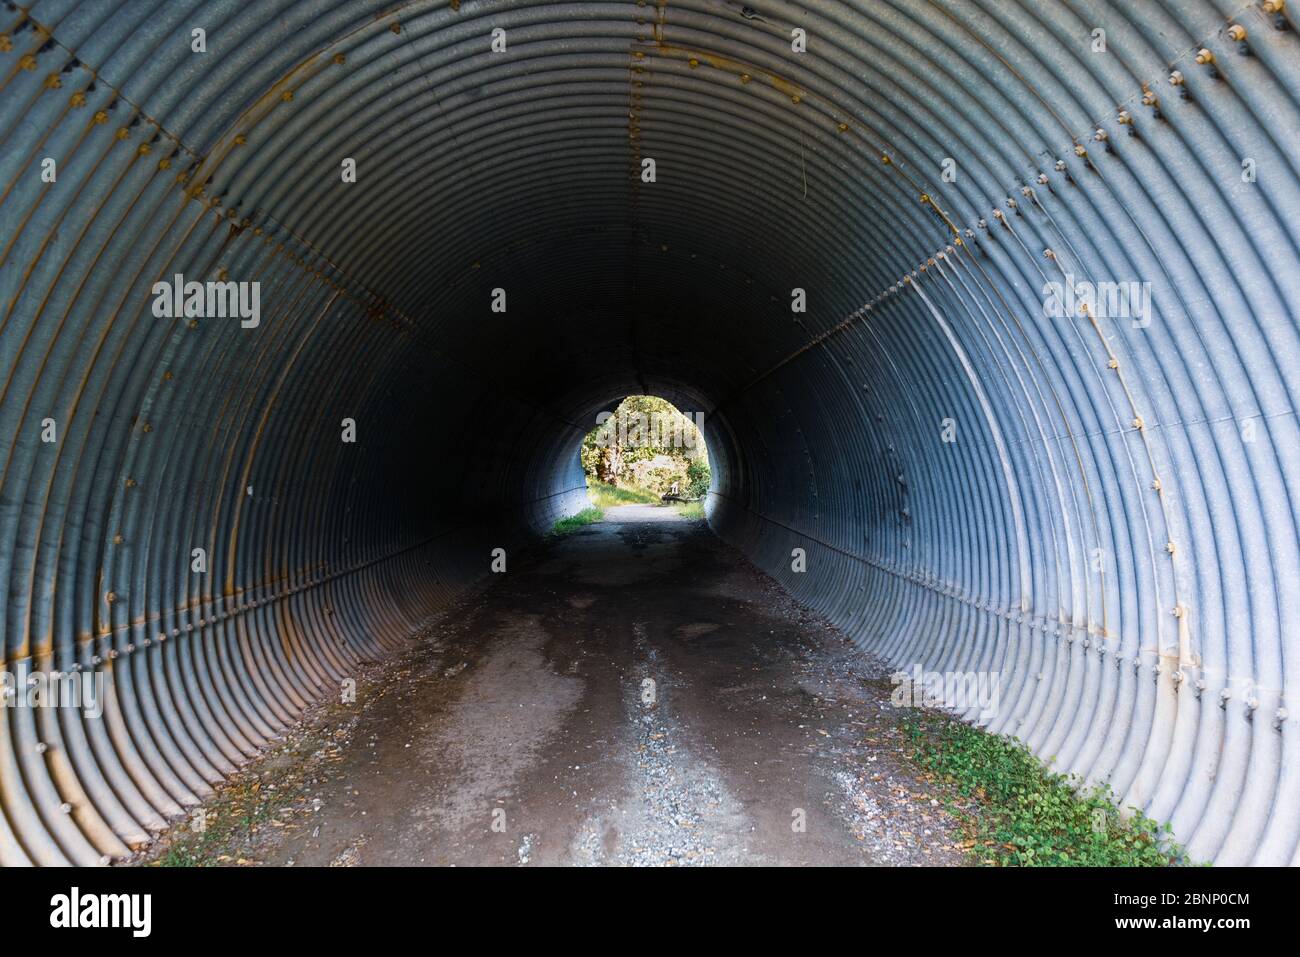 Narrow pedestrian tunnel under a road in Santa Cruz mountains, San Francisco Bay Area, California Stock Photo